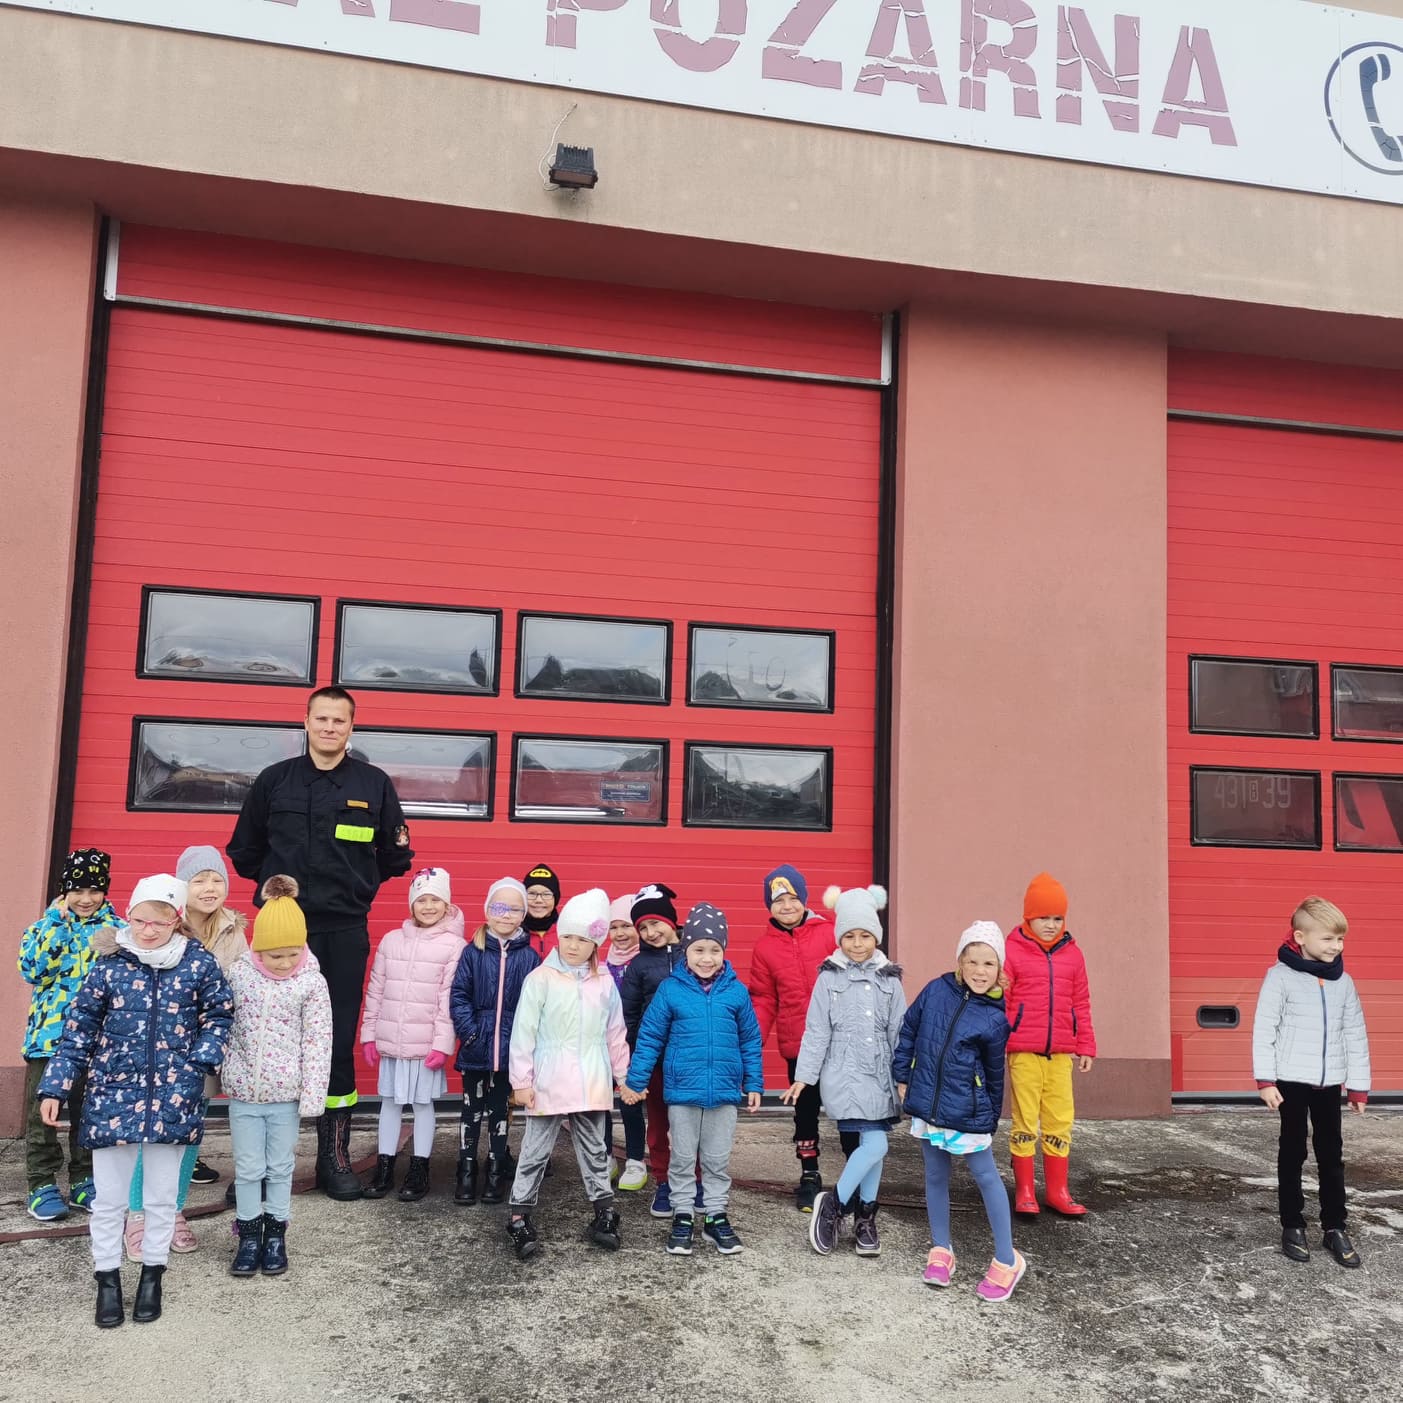 Grupa dzieci stoi przed budynkiem straży pożarnej w mieście Hajnówka.